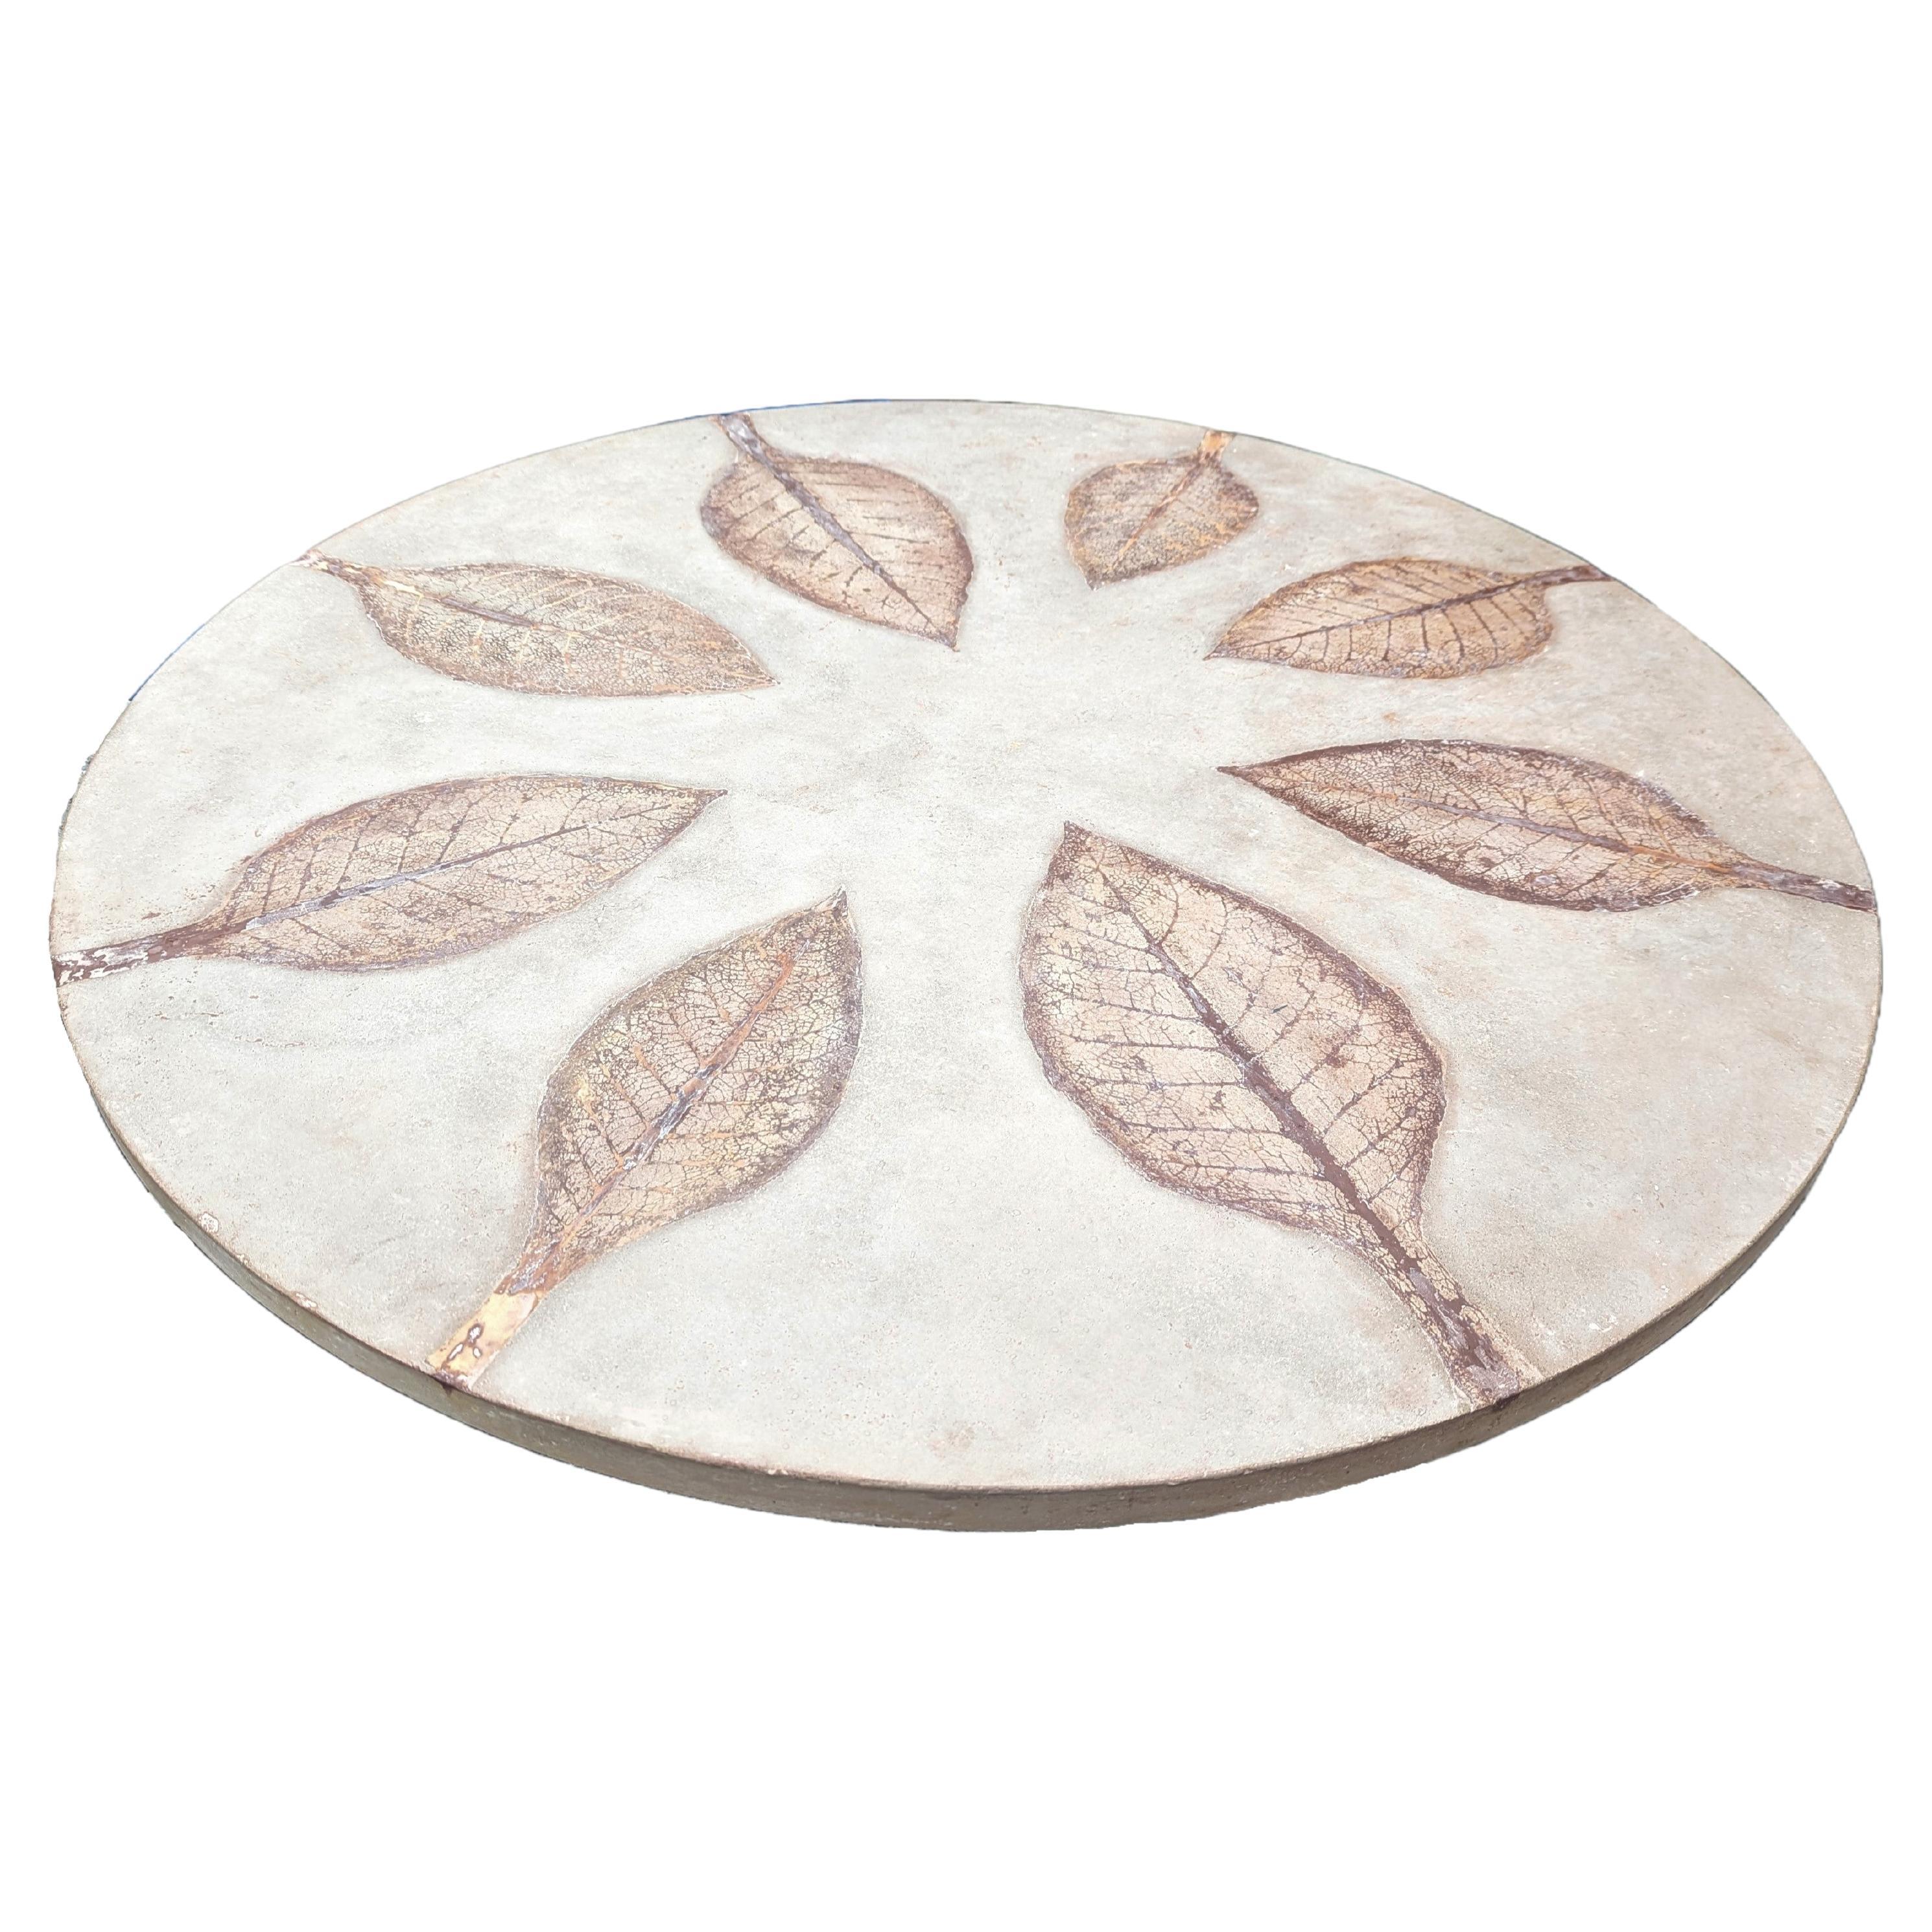 Plateaux de table à manger ou de table basse en béton personnalisables avec motifs botaniques